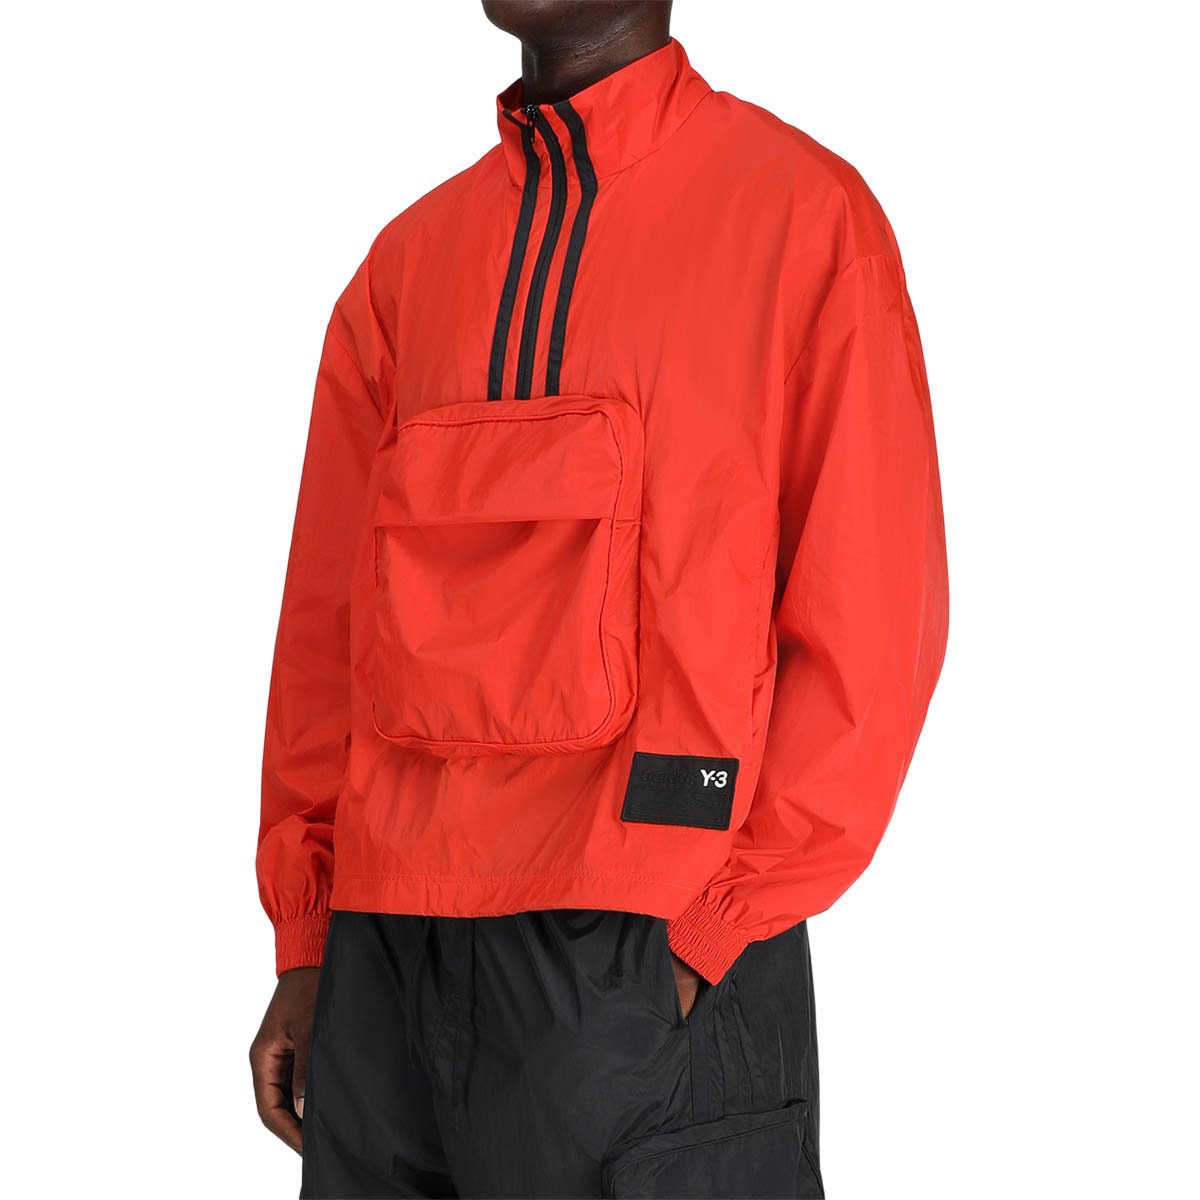 y3 orange jacket